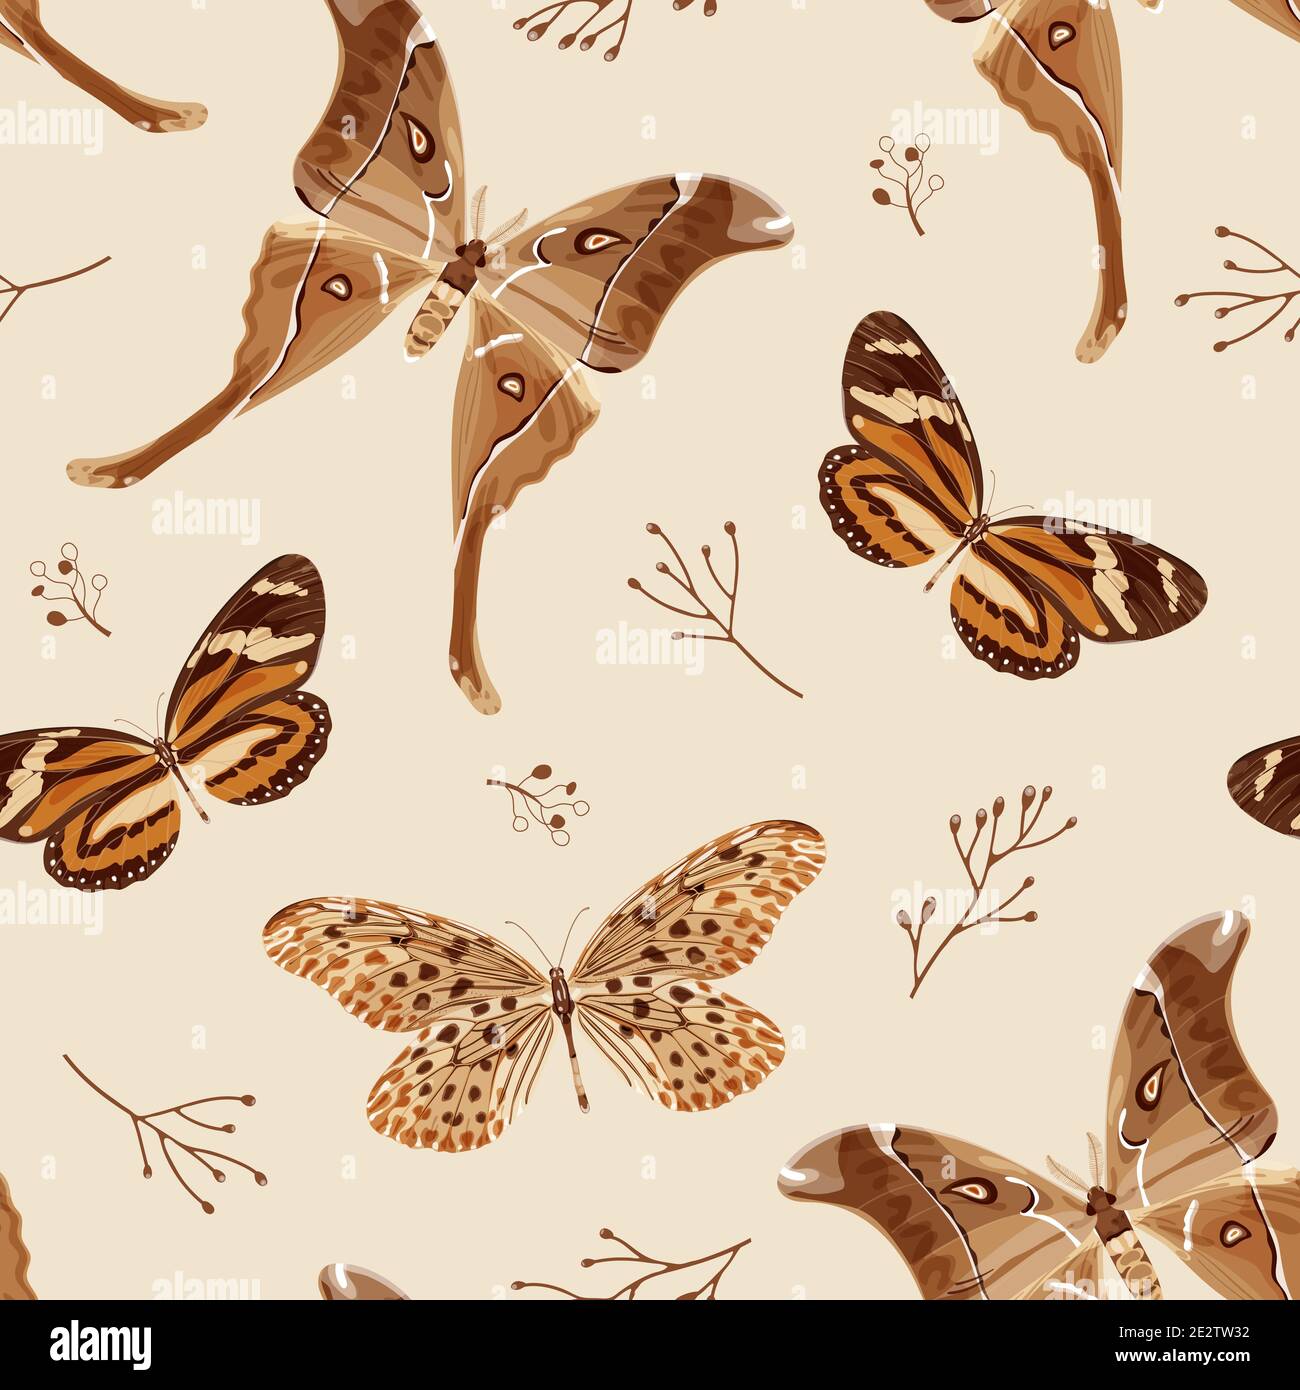 HD wallpaper Butterfly fernWindows Theme Wallpaper brown butterfly  insect  Wallpaper Flare